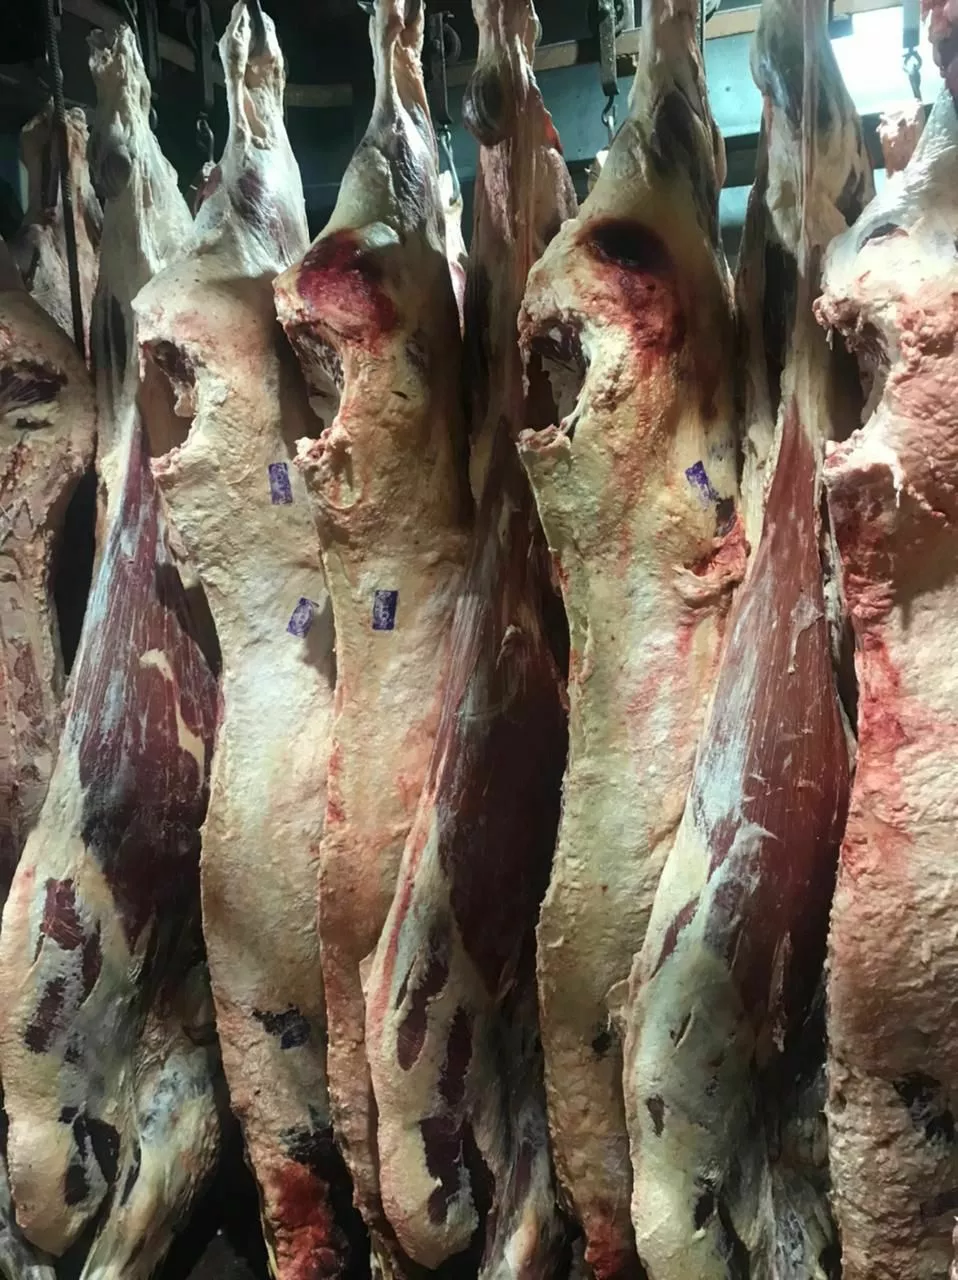 мясо говядины в ассортименте  в Хабаровске и Хабаровском крае